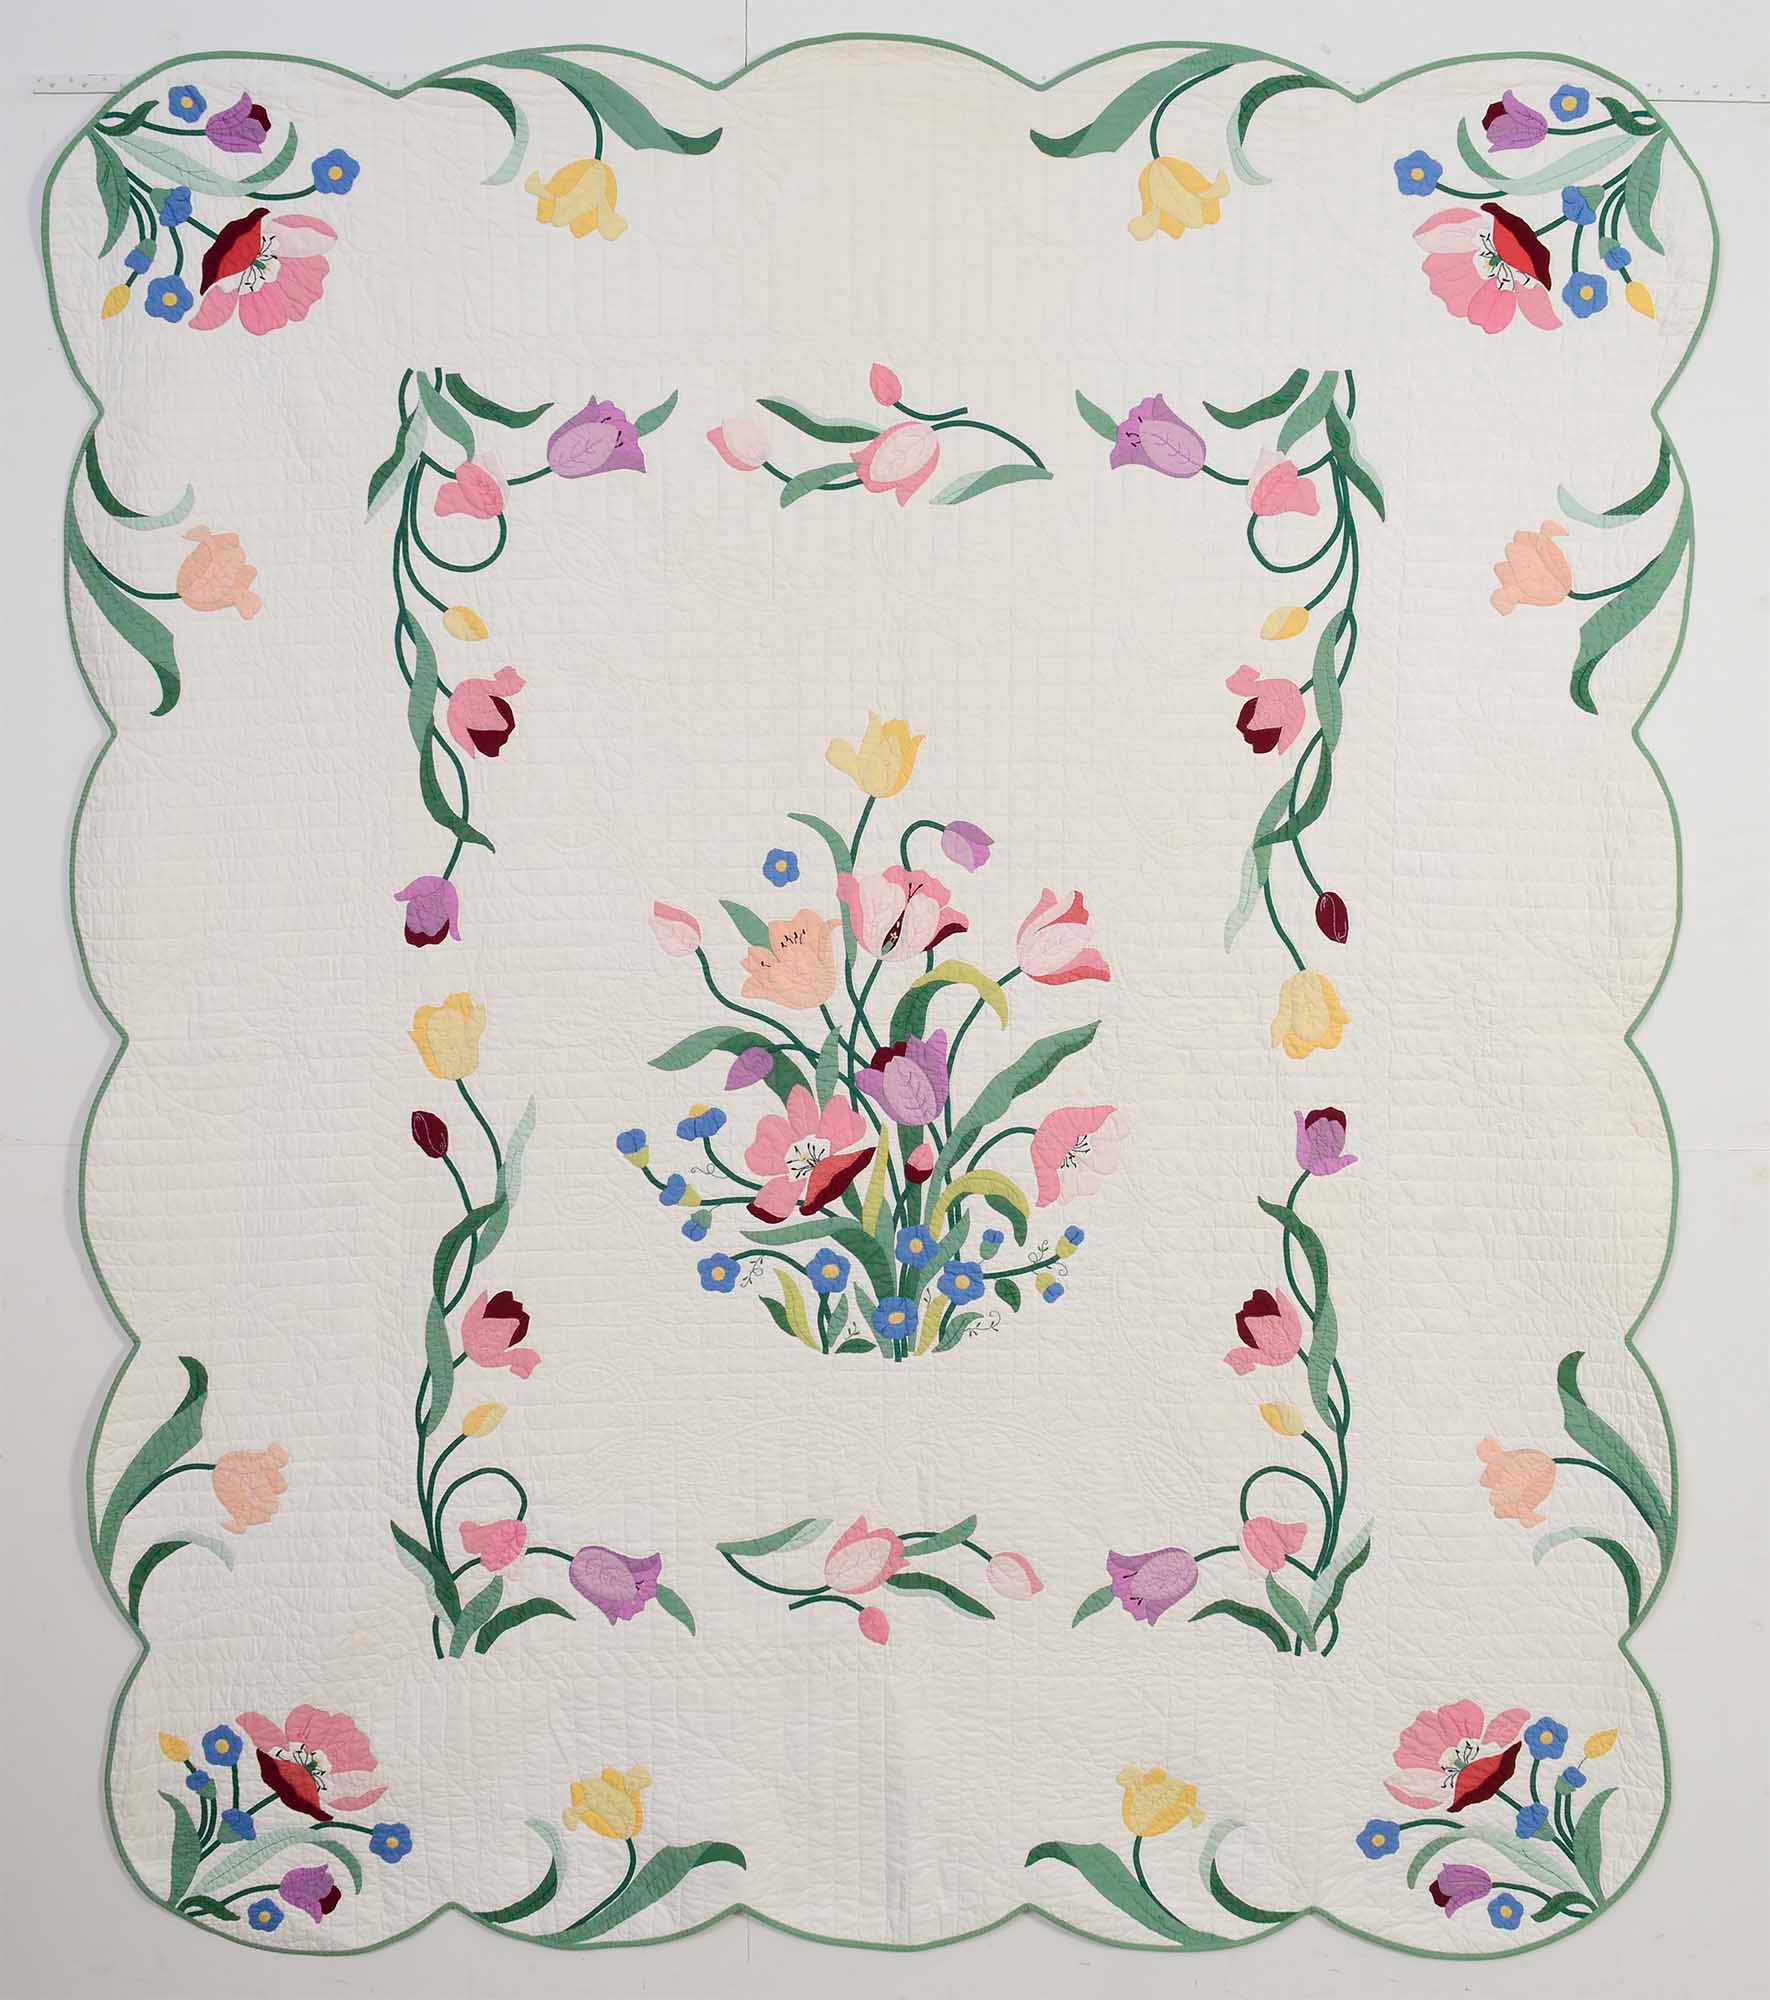 Pair of Floral Applique Quilts